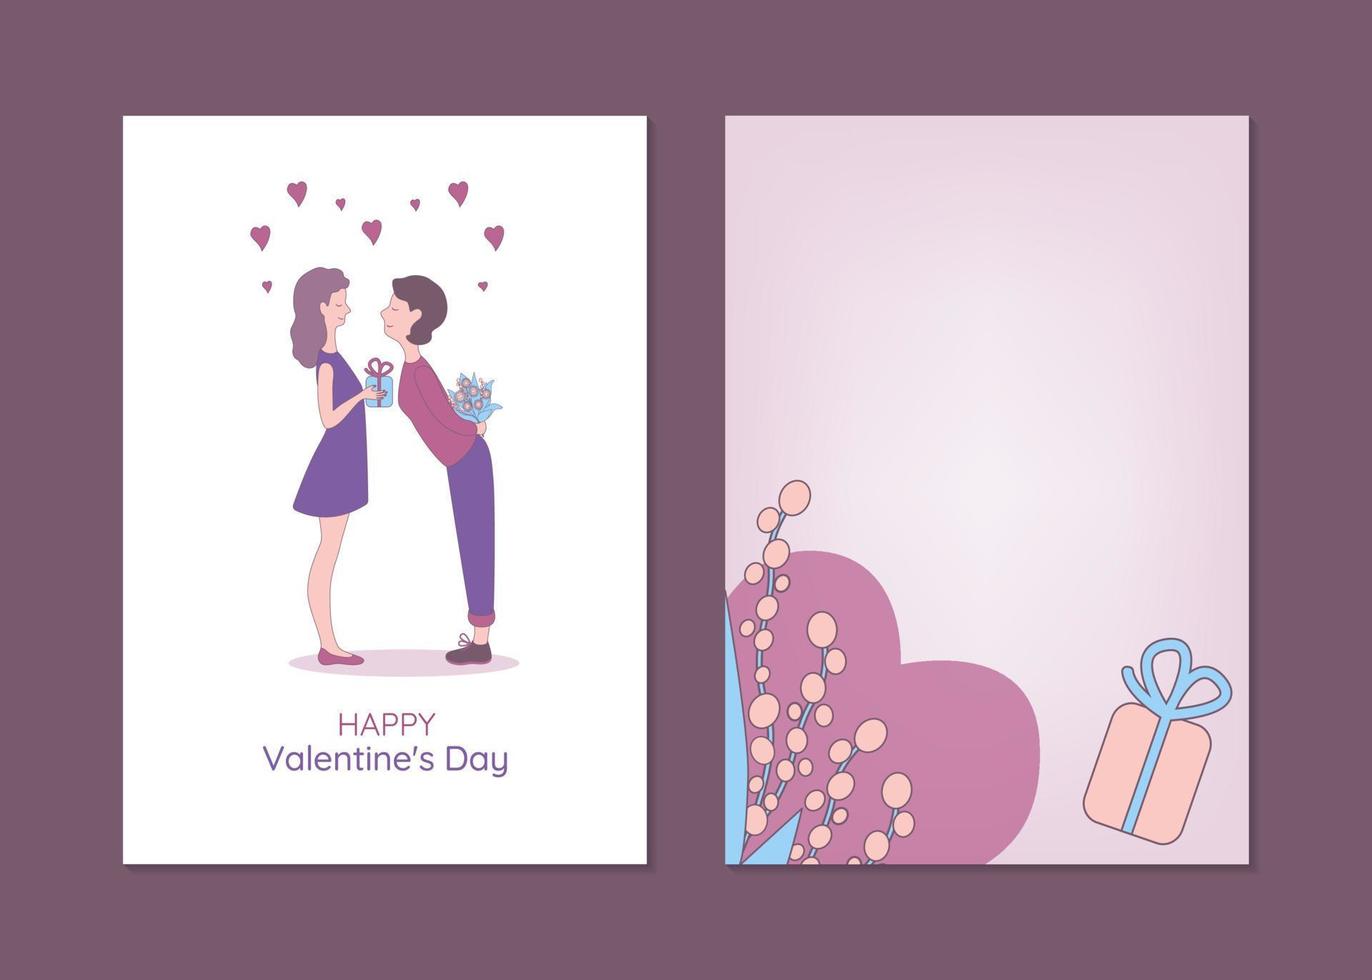 modelos de cartão de dia dos namorados com pessoas lgbtq. ilustração vetorial desenhada à mão de casal de lésbicas trocando presentes. vetor